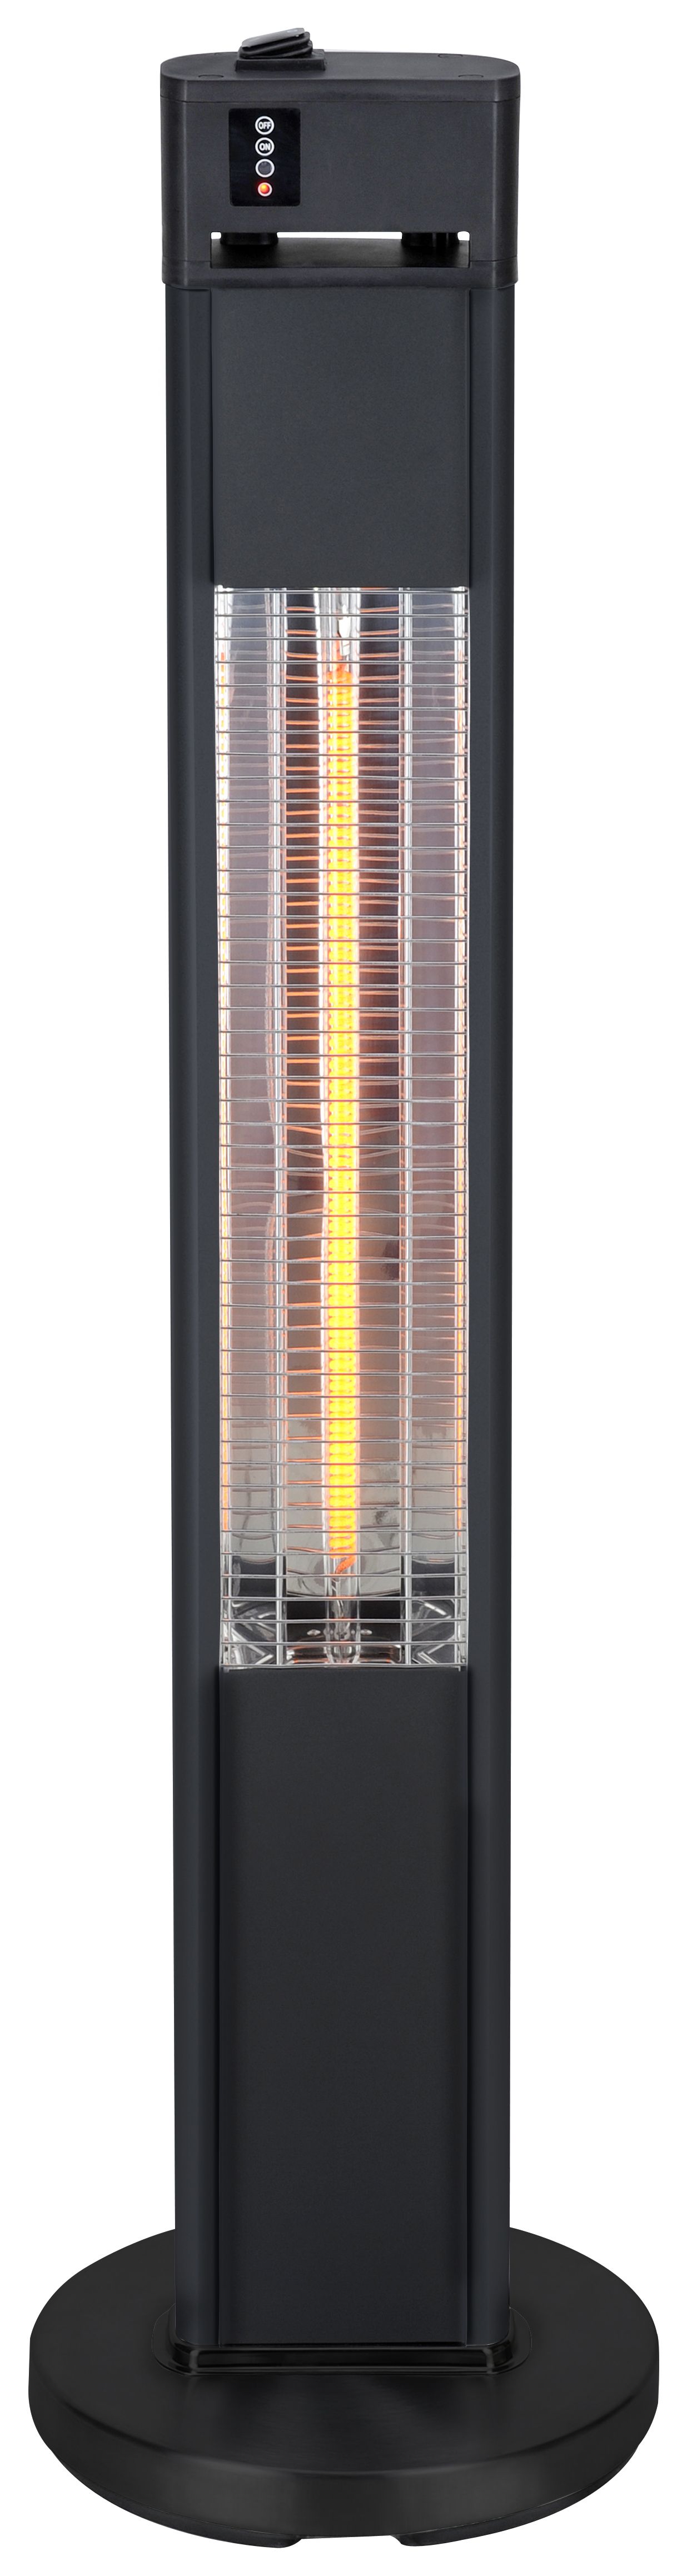 Blaze Floor Standing Electric Outdoor Heater - 1600W